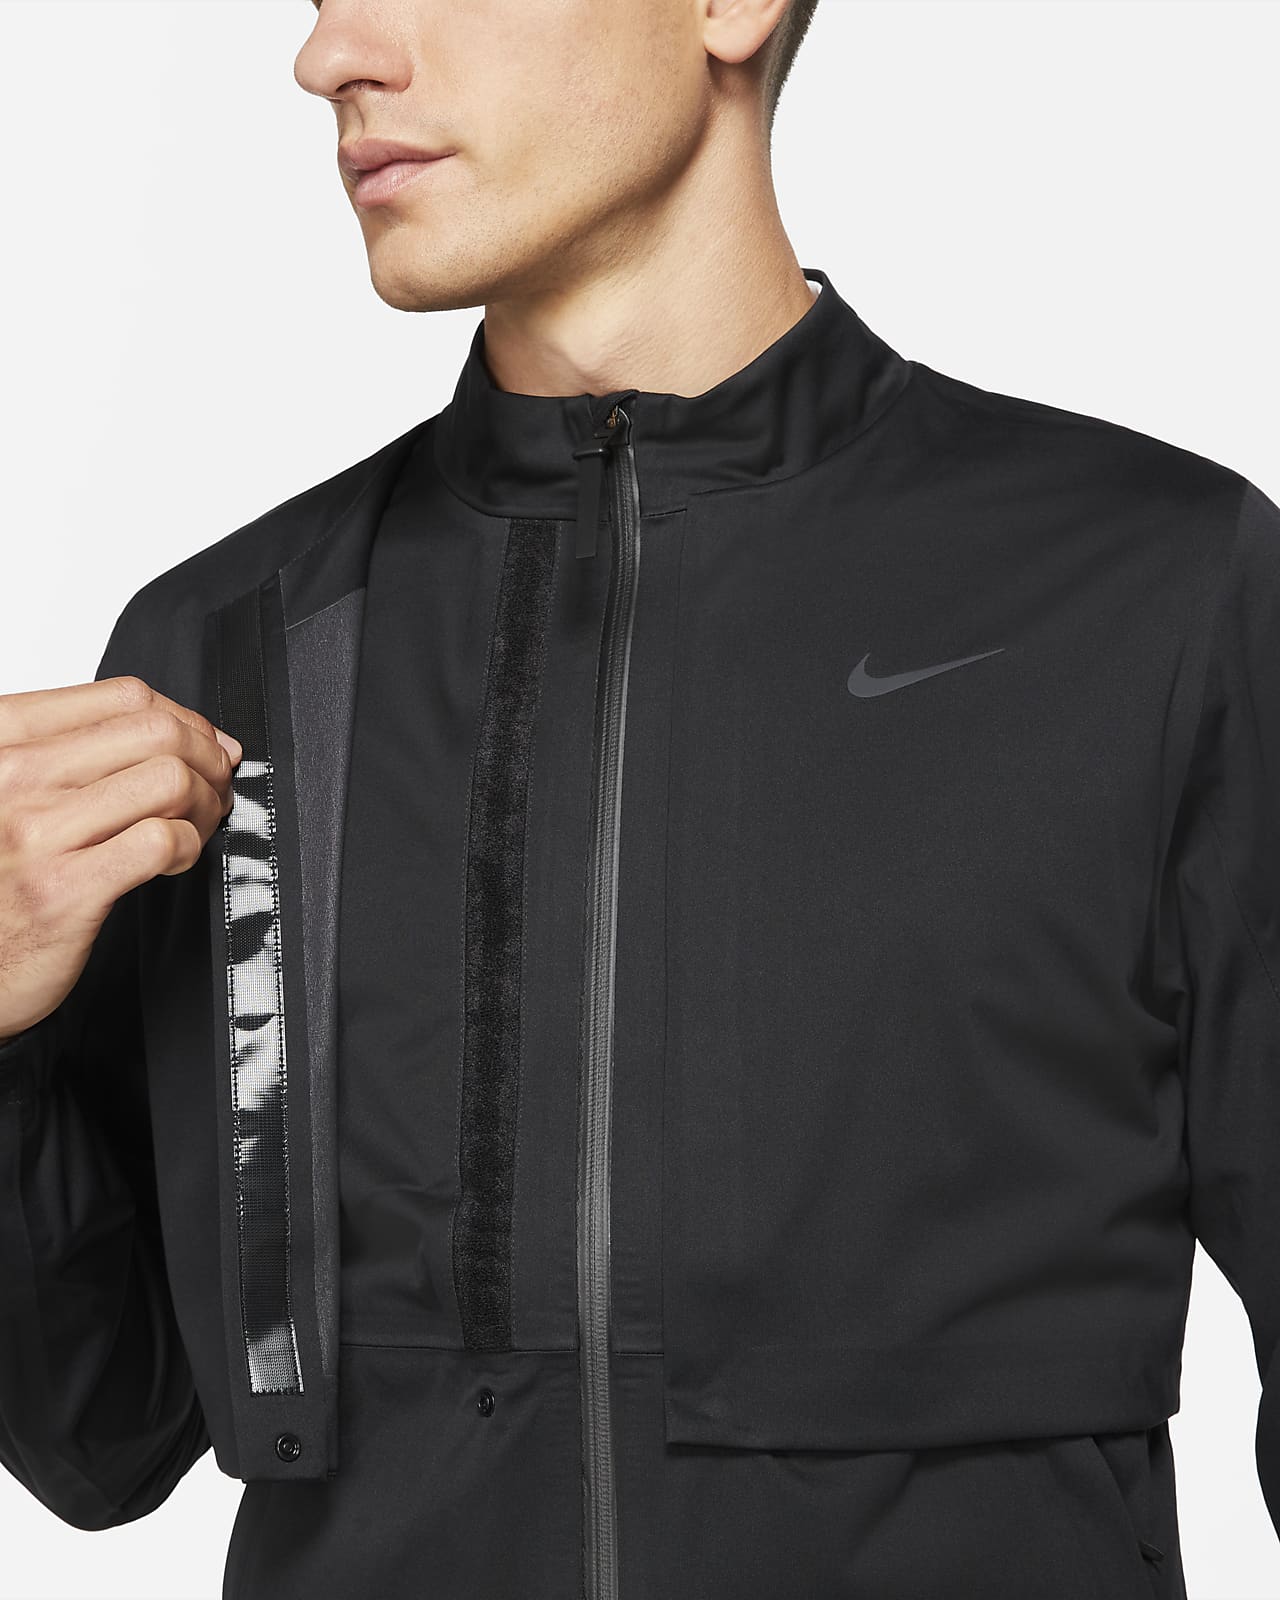 Nike Storm-FIT ADV Rapid Adapt Men's Golf Jacket. Nike NZ